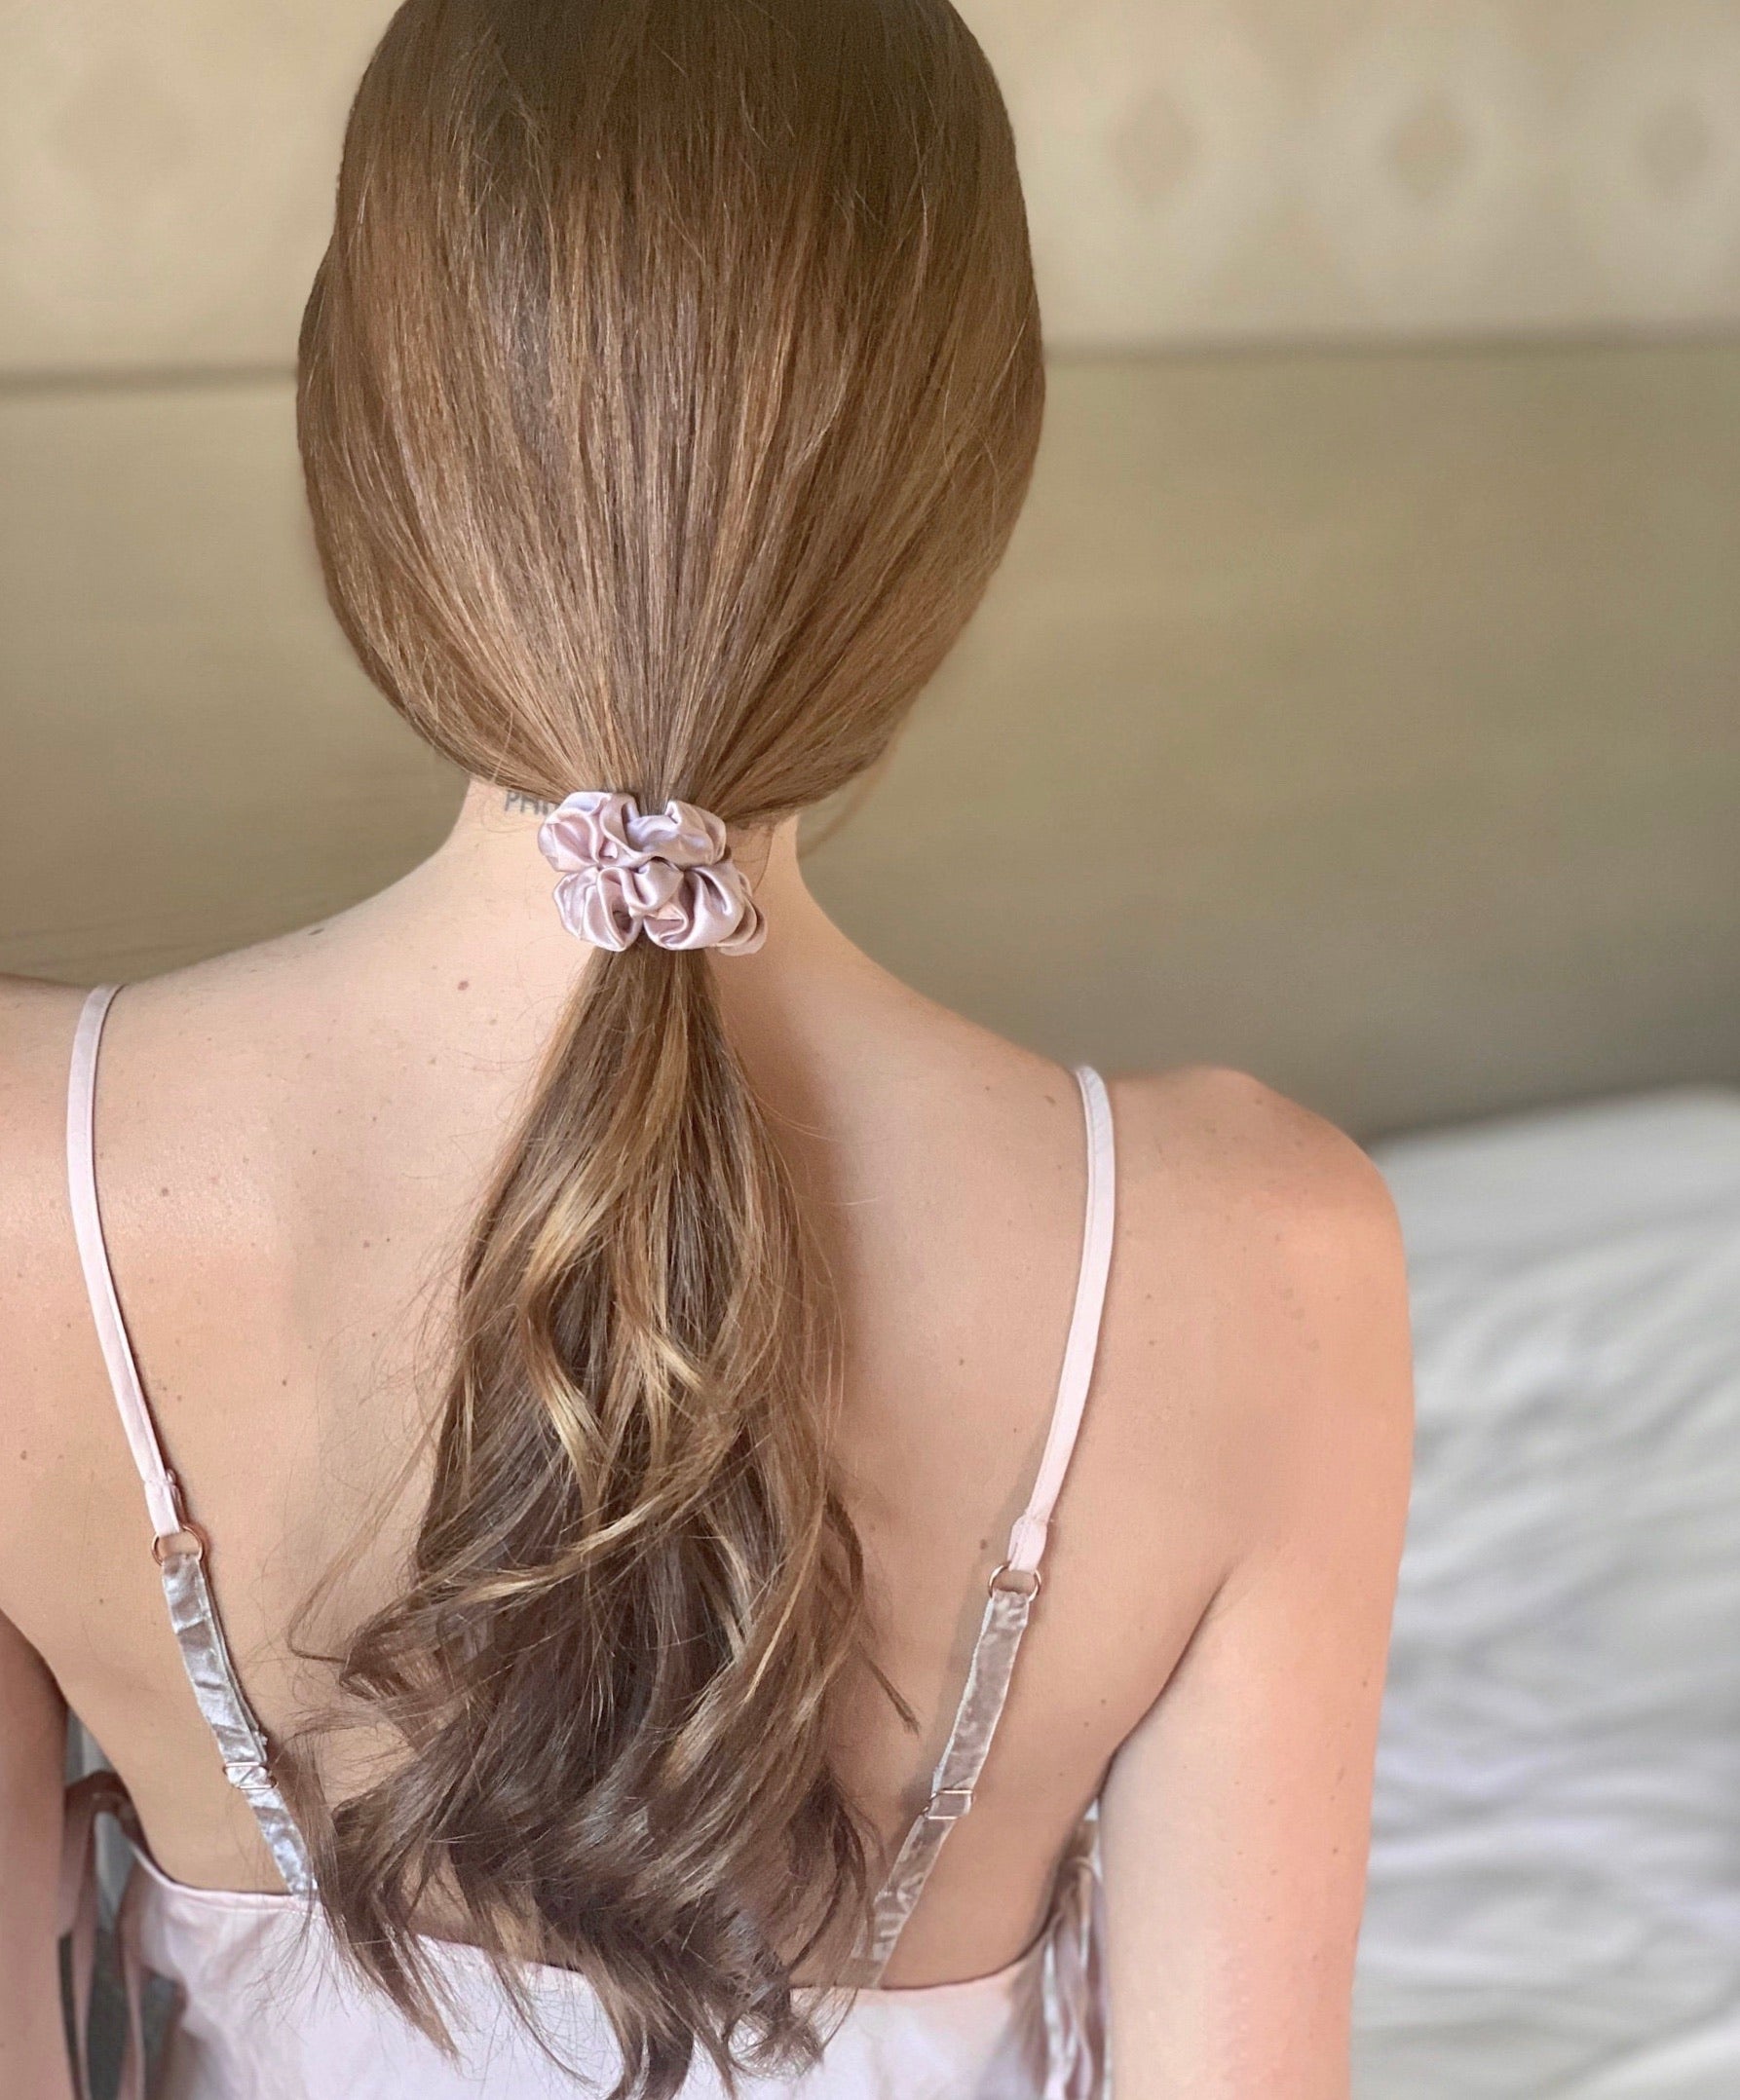 Silked Hair Scrunchies Voted #1 Best Hair Accessories in Harper's Bazaar 2020